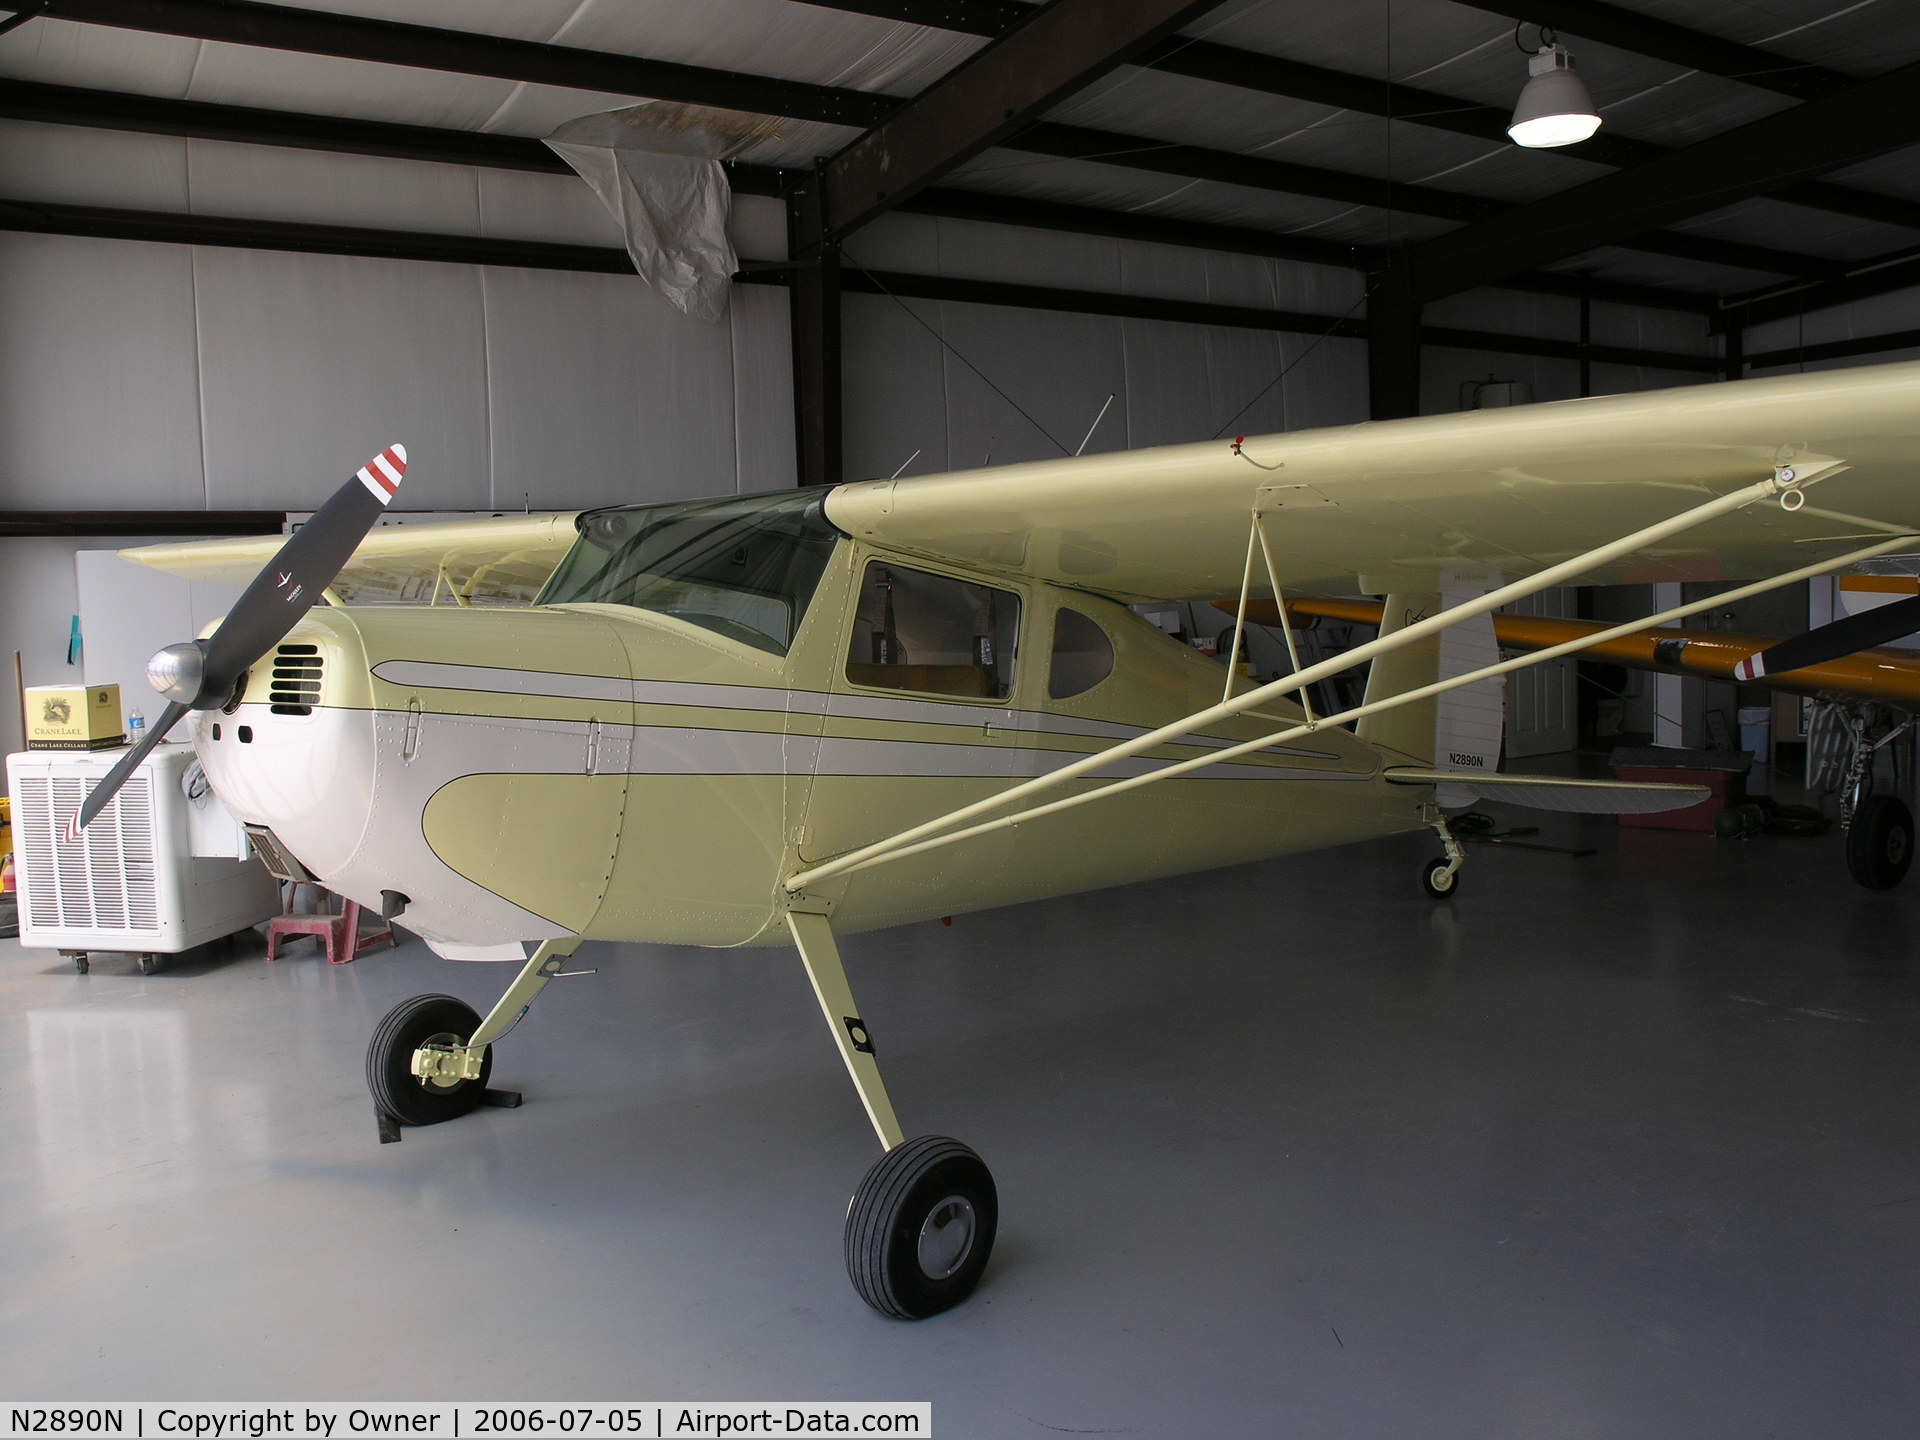 N2890N, 1947 Cessna 120 C/N 13151, N2890N in hanger